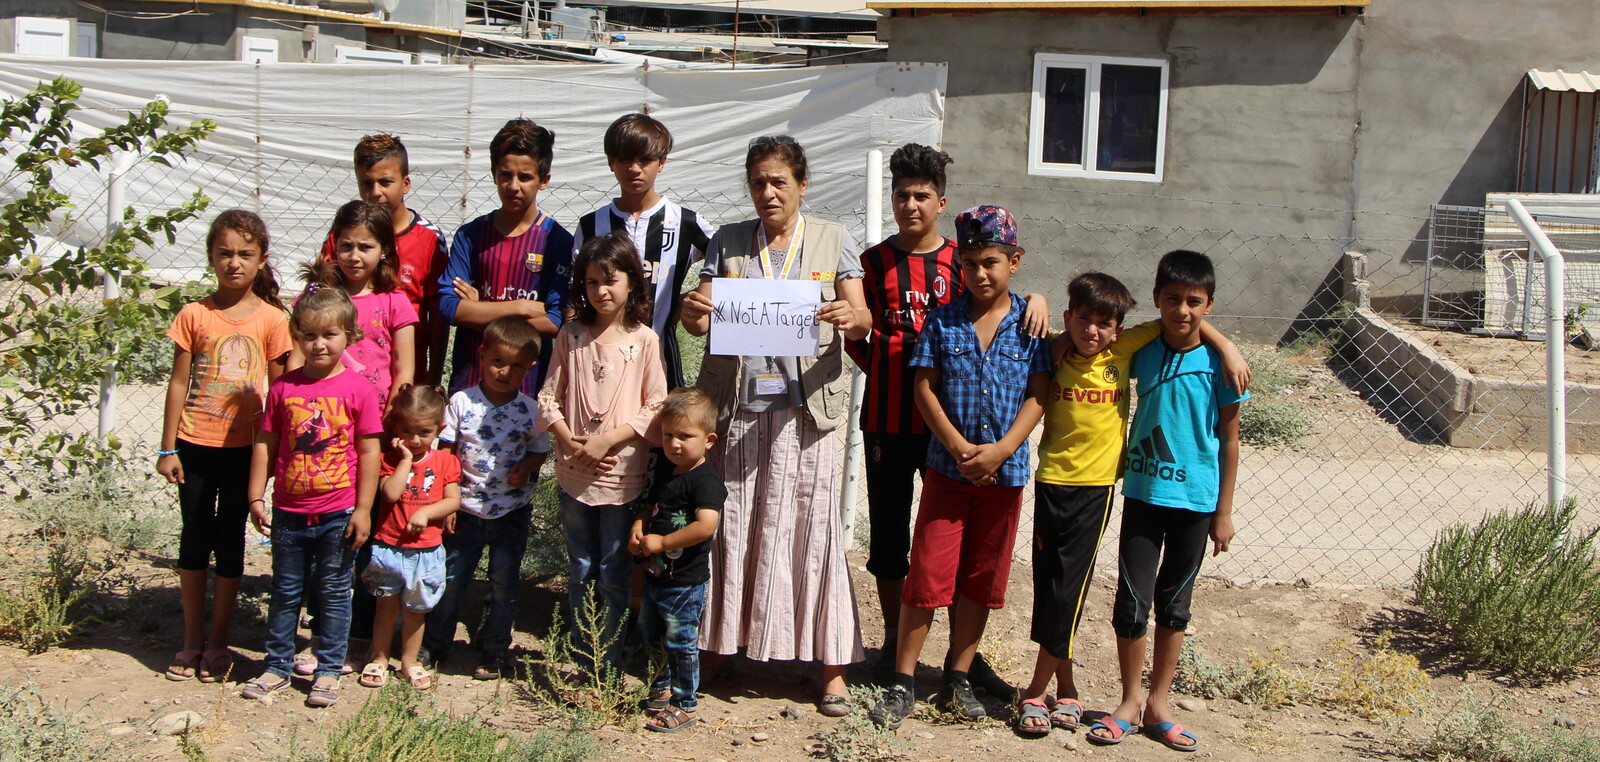 Helferin im Irak setzt ein Zeichen gegen Gewalt